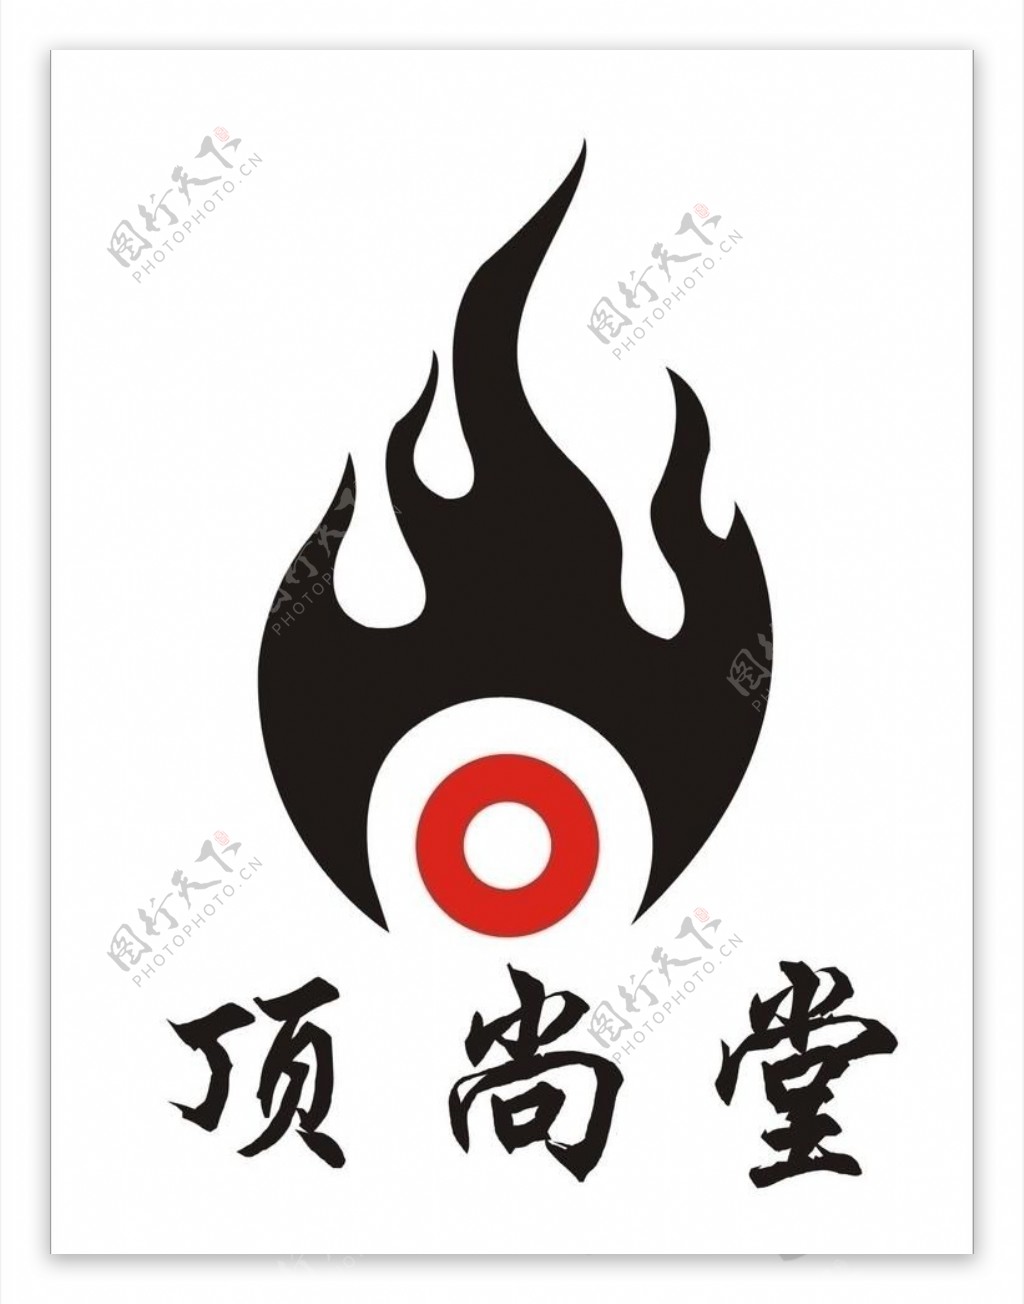 顶尚堂logo图片